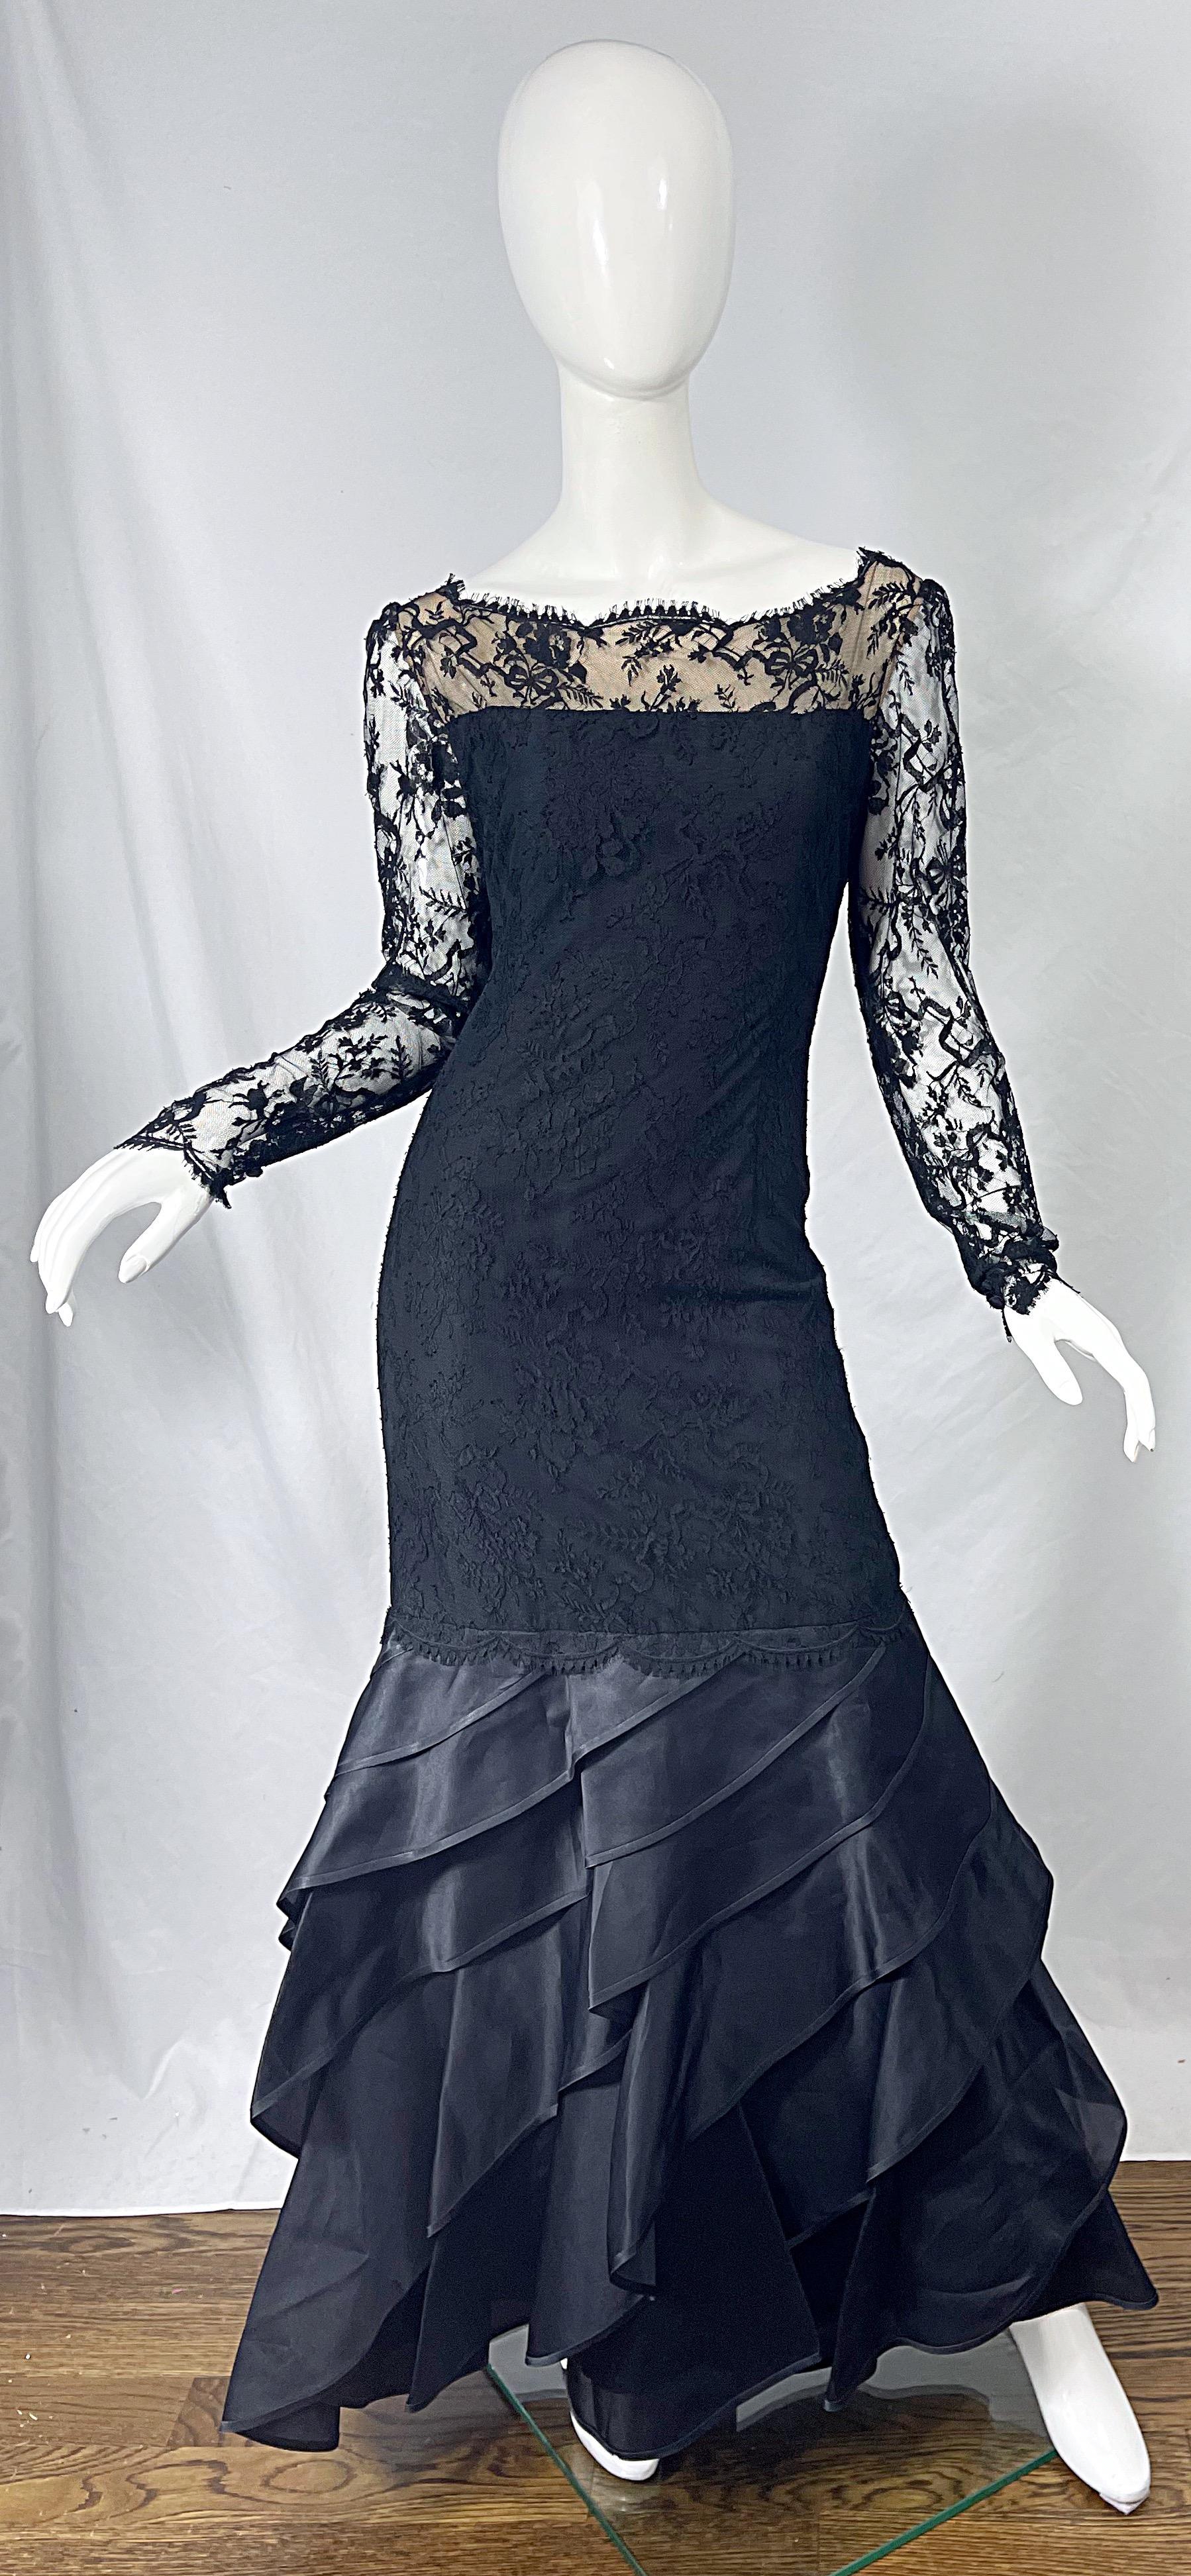 Wunderschönes 90er Jahre BILL BLASS schwarzes Abendkleid aus Chantilly-Spitze, Seide und Satin mit langen Ärmeln ! Mit nacktem Chiffon unter dem Mieder. Ärmel aus transparenter Spitze. Verdeckter Reißverschluss auf der Rückseite mit Haken- und